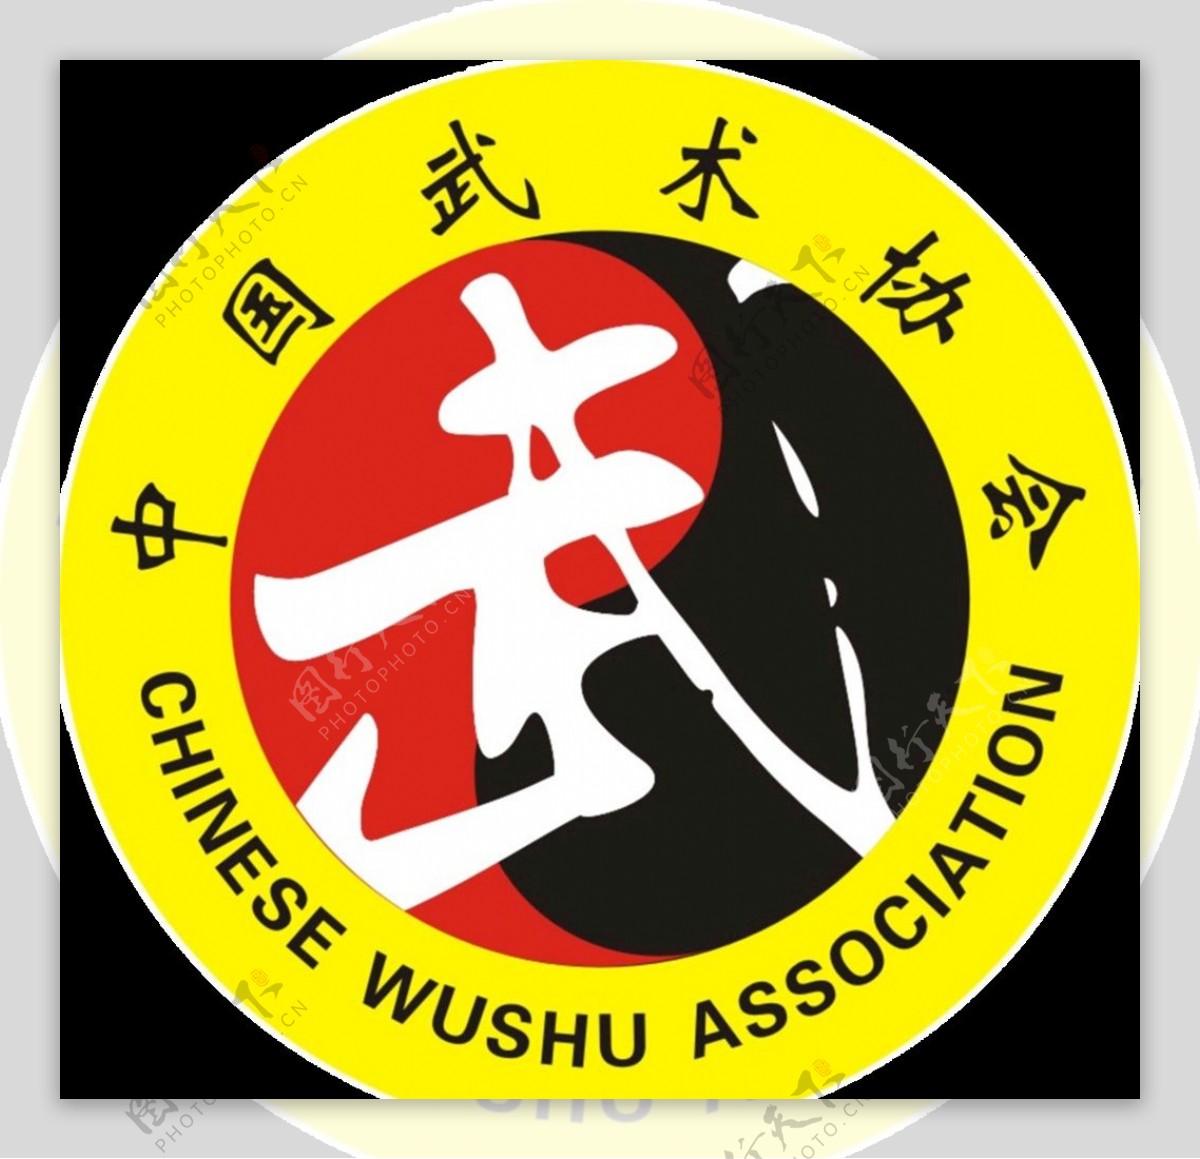 至正宏仁跆拳道中国武术协会标志图片